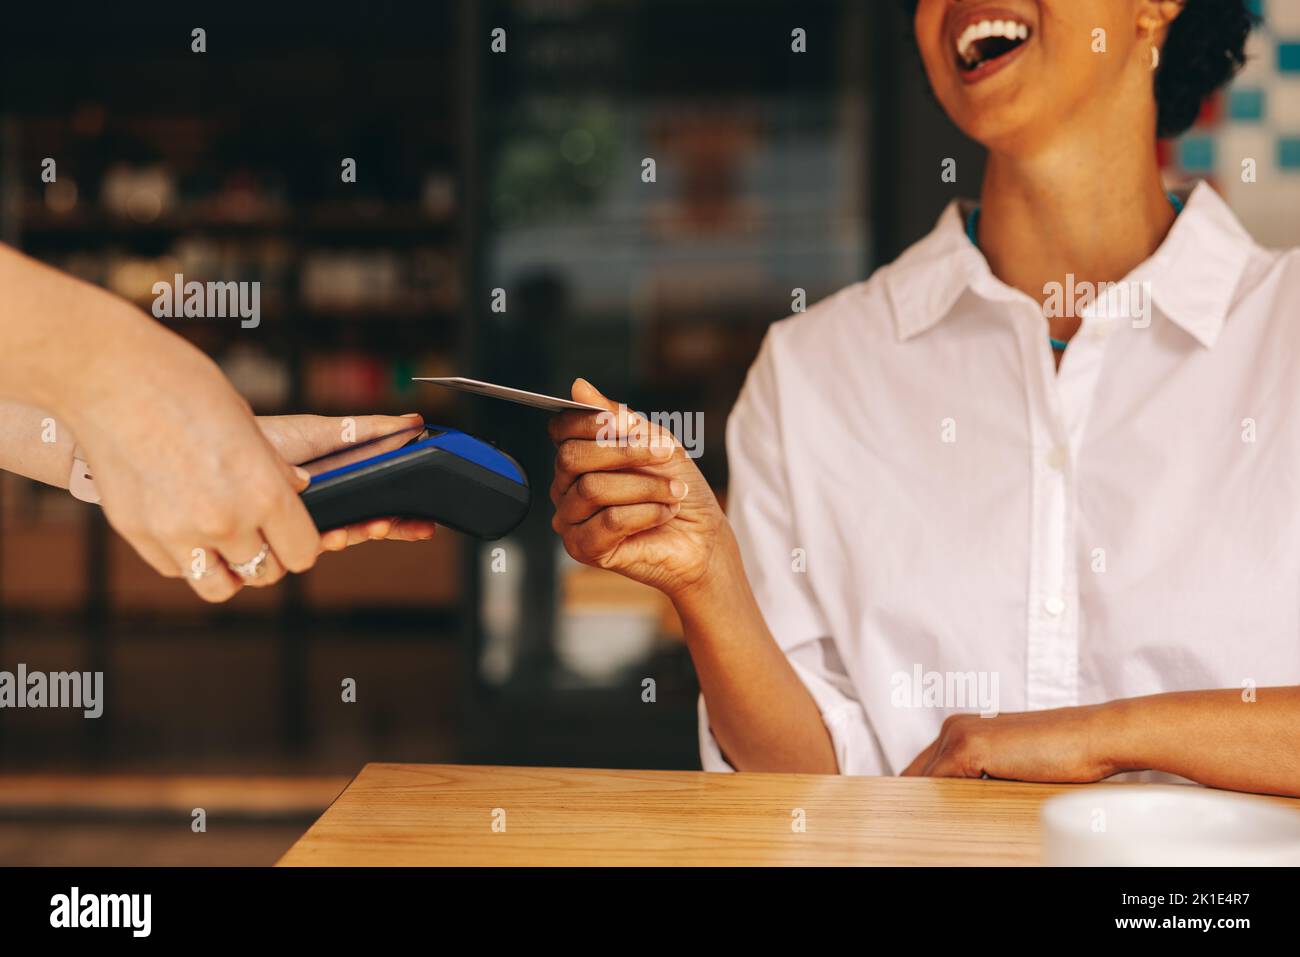 Glückliche Kundin scannt ihre Kreditkarte auf einem Kartenautomaten, um ihre Rechnung in einem Café zu bezahlen. Fröhliche Frau, die eine bargeldlose und kontaktlose Transaktion macht Stockfoto